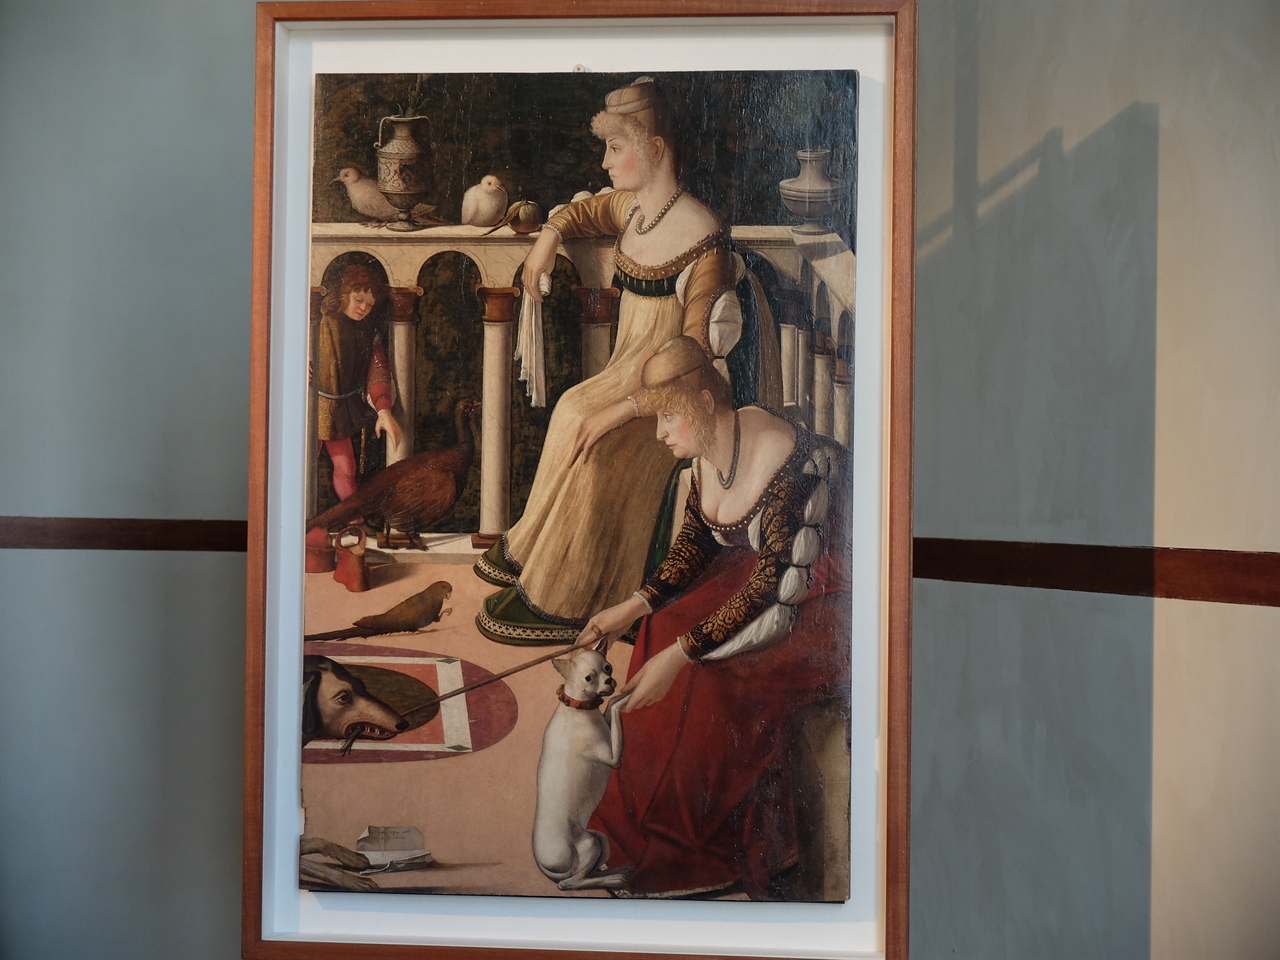 비토레 카르파치오, ‘베네치아의 두 여인’, 베네치아 코레르 박물관. 근래에 이 여인들의 정체가 알려져 조금은 환상이 깨어진 느낌입니다. 